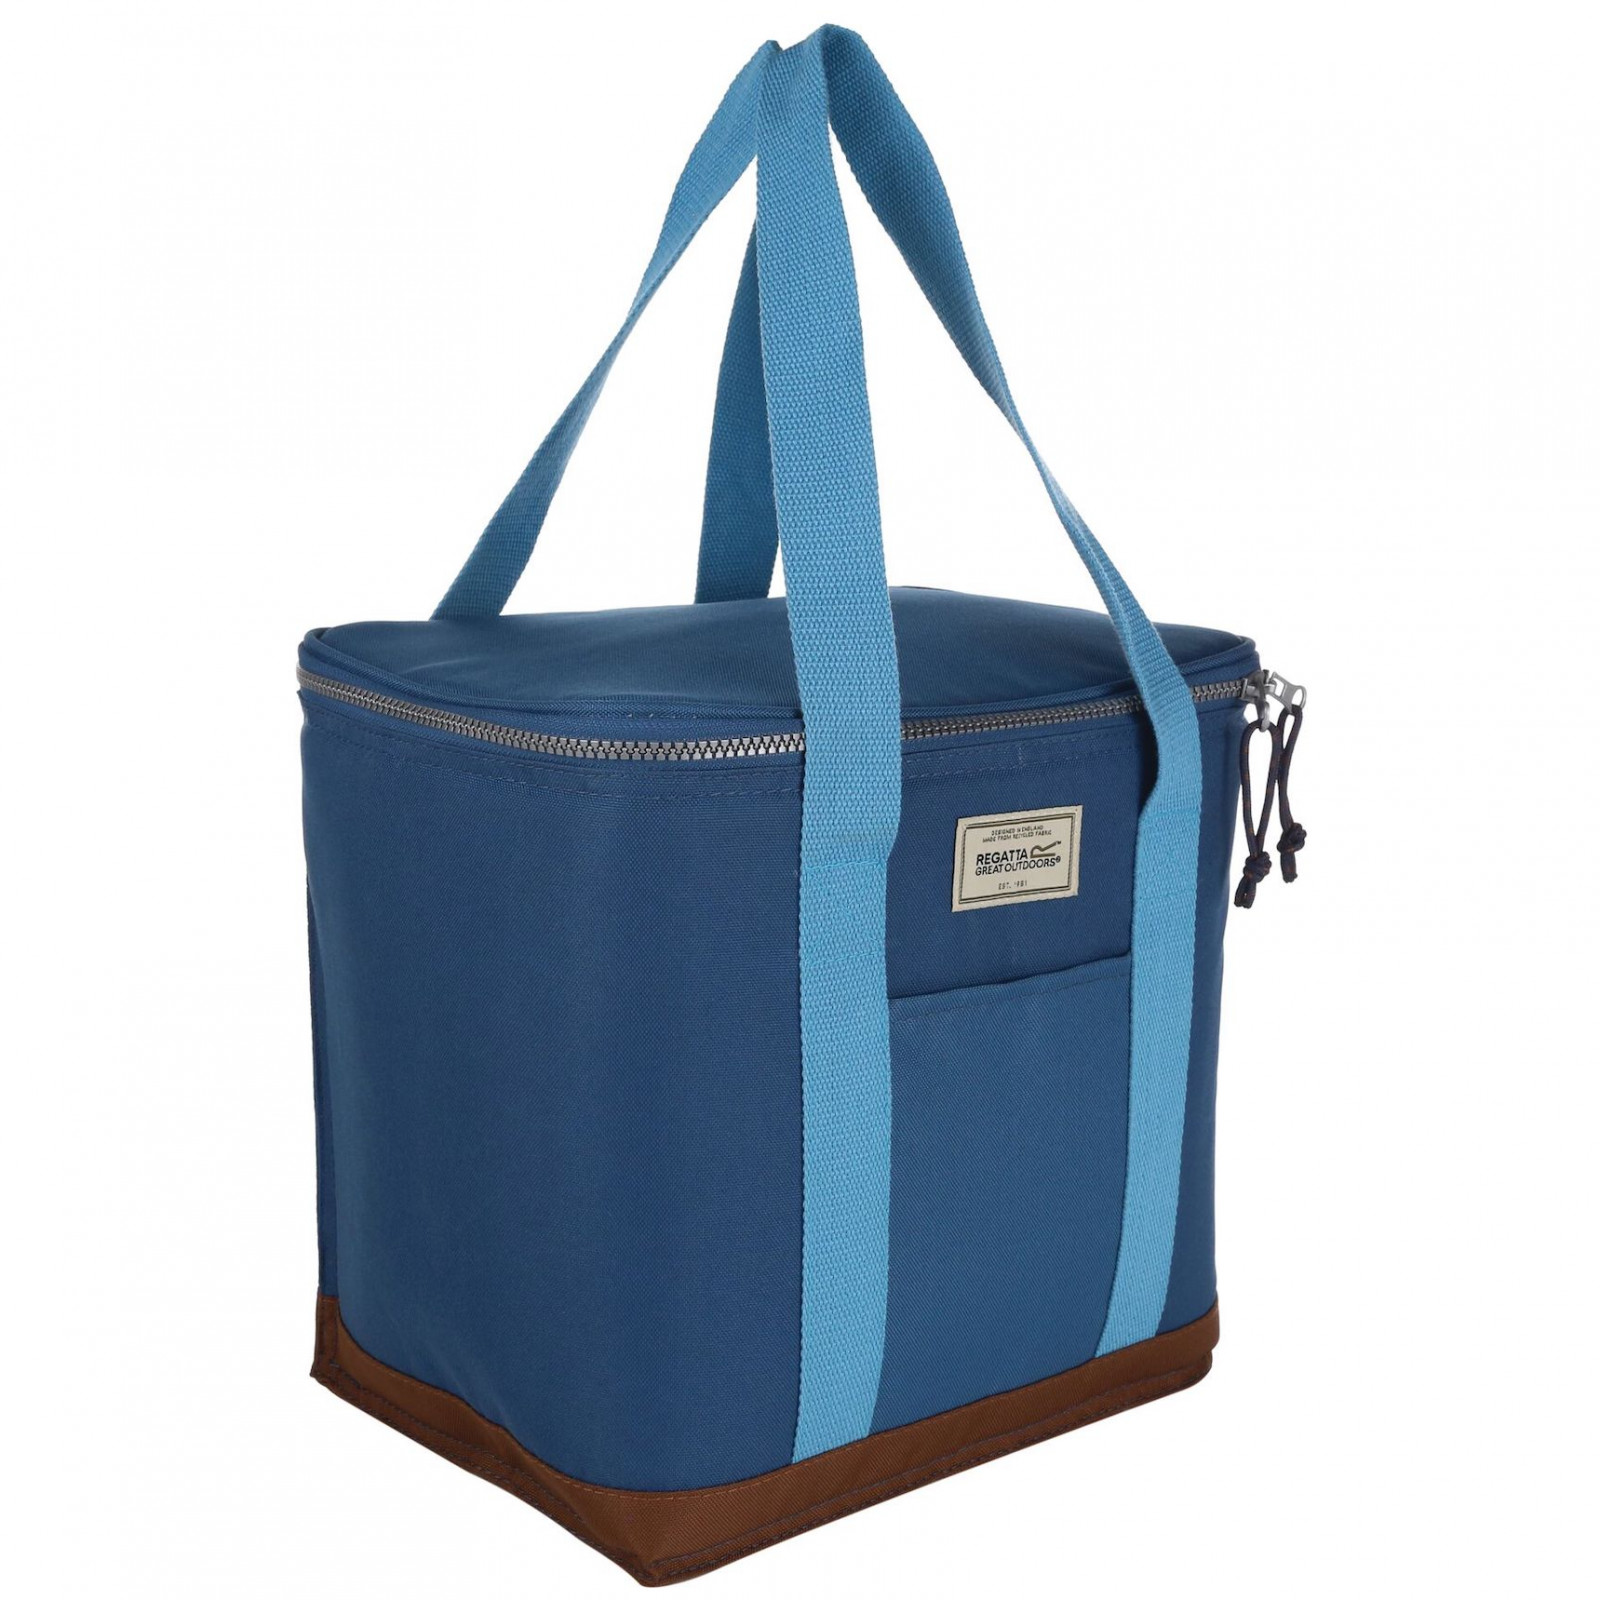 Chladící taška Regatta Stamford 12L Coolbag Barva: modrá